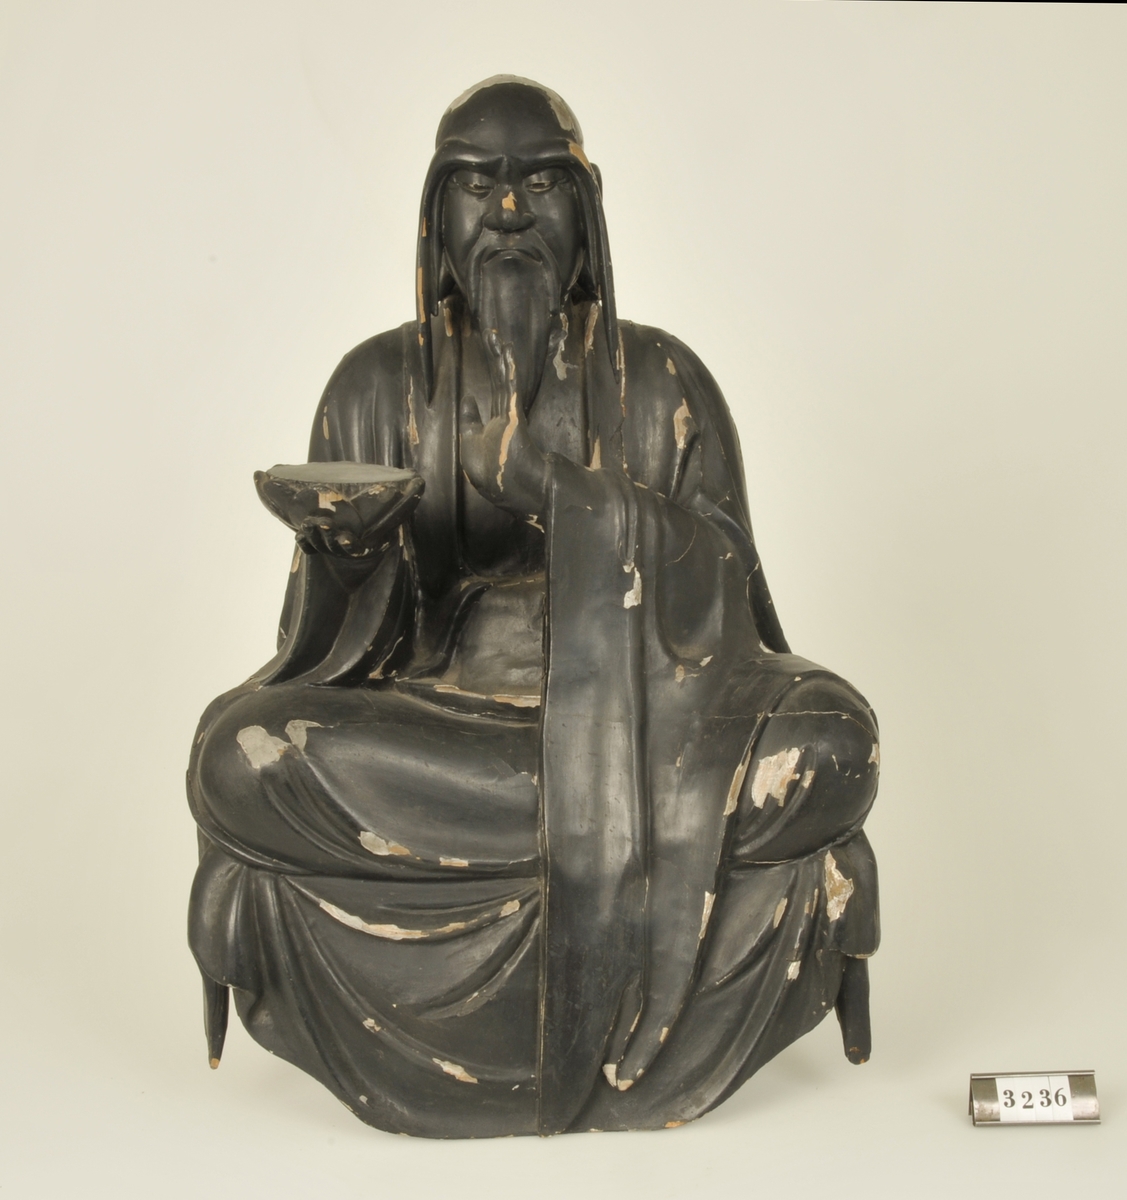 Träskulptur föreställande en man i sittande ställning.
Håller i höger hand en tom bricka. Målad i svart.

Har tillhört de Adelsköldska samlingarna.
